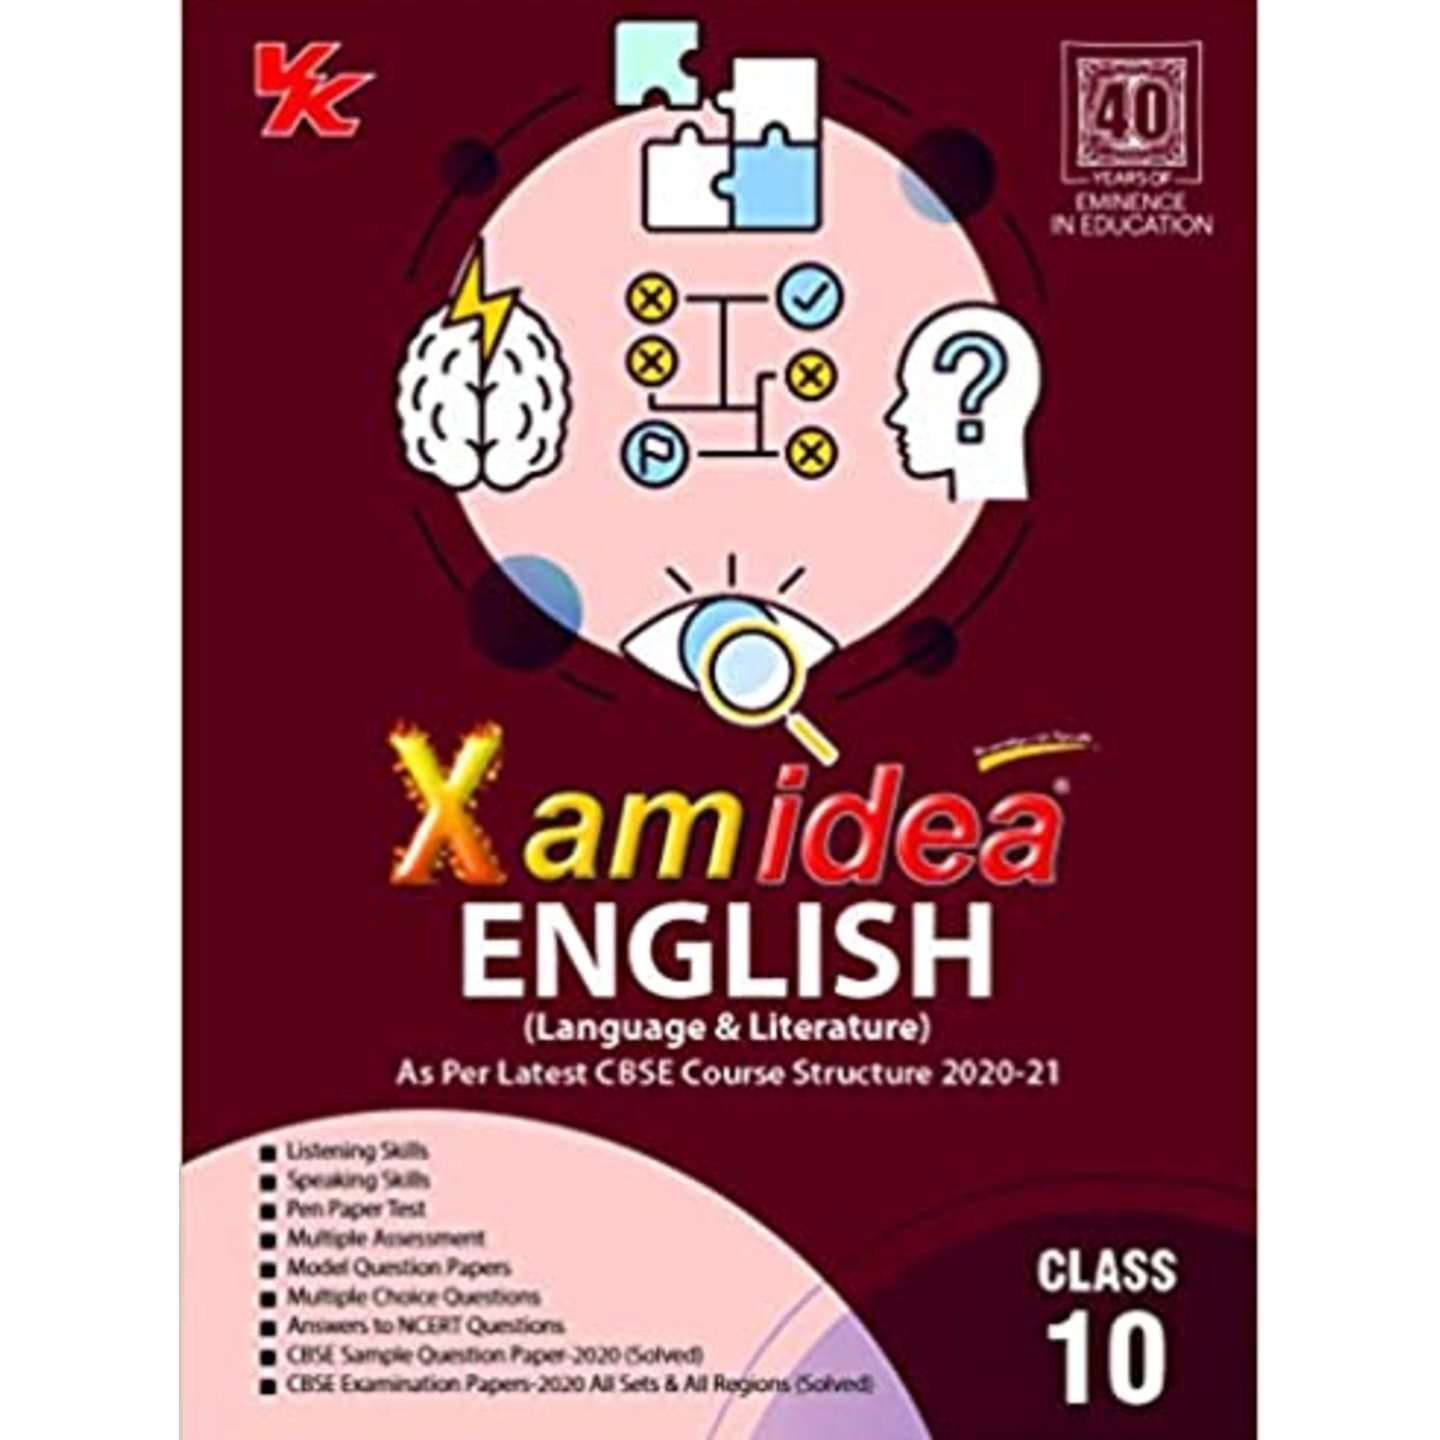 Xamidea English - Class 10 - CBSE VK